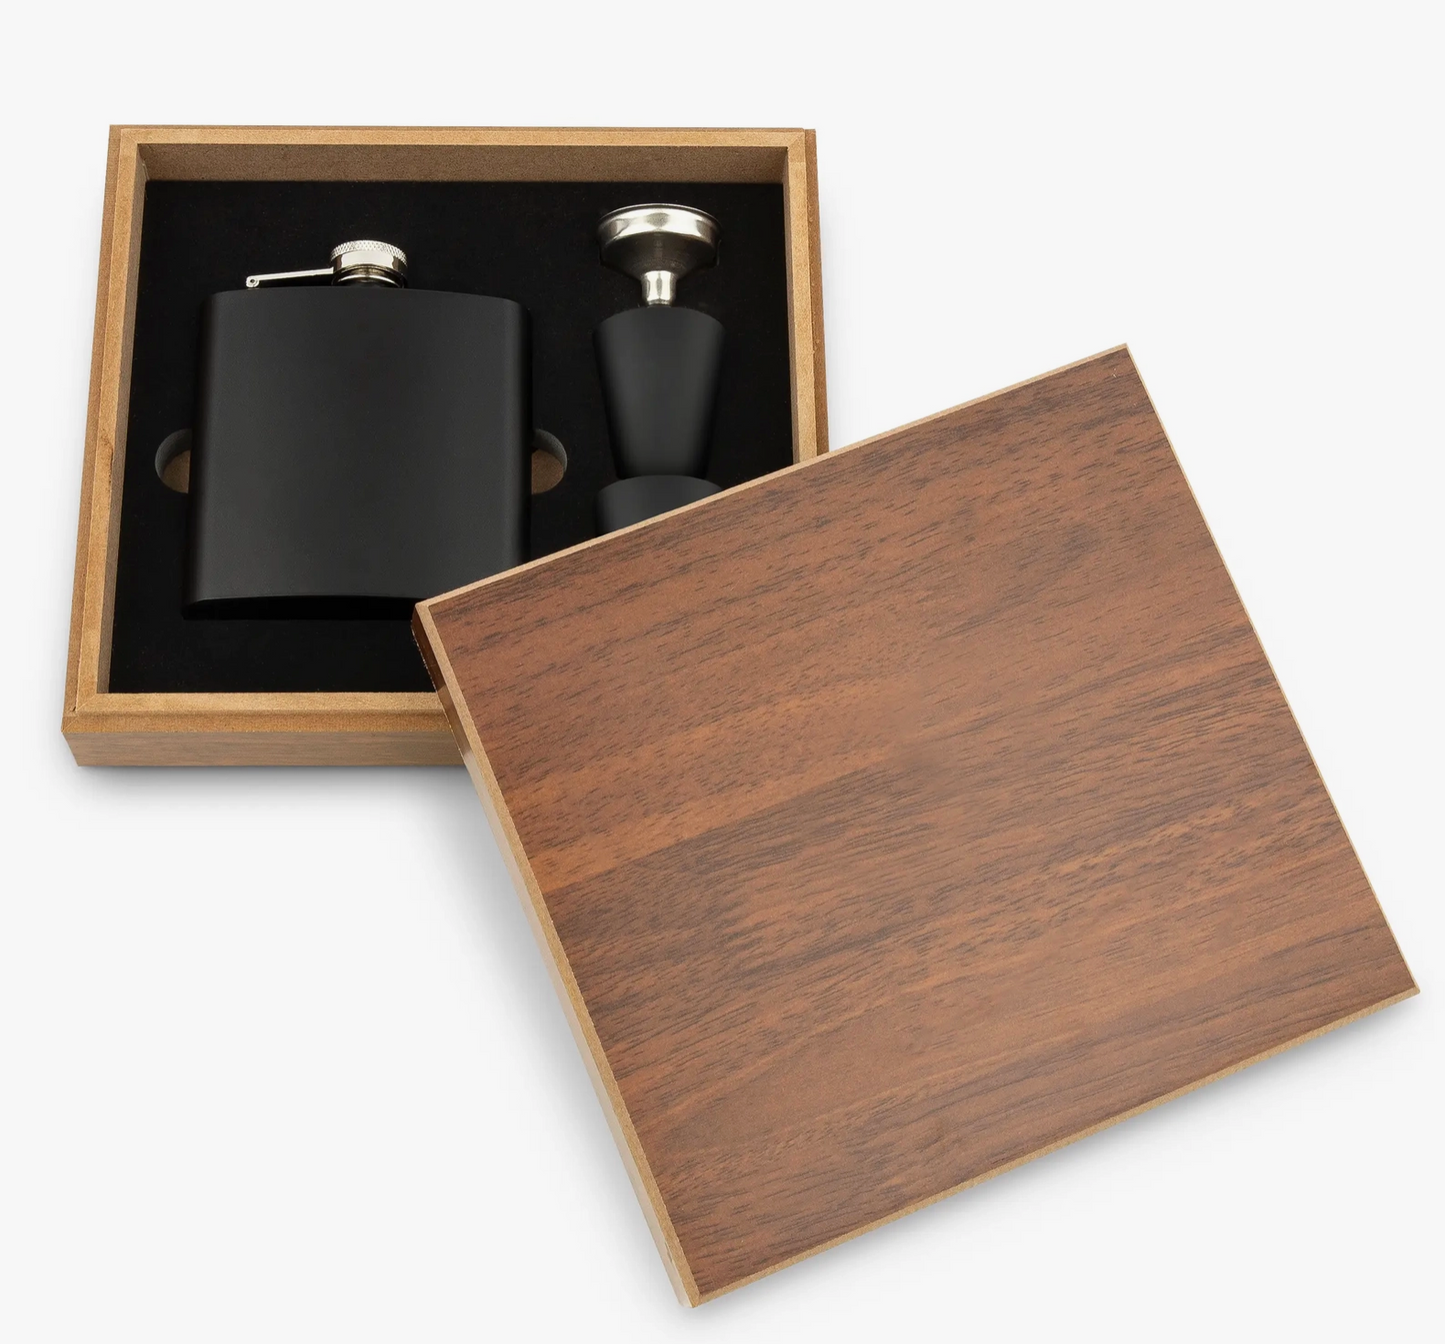 Wood Gift Box & Black Metal Hip Flask Set